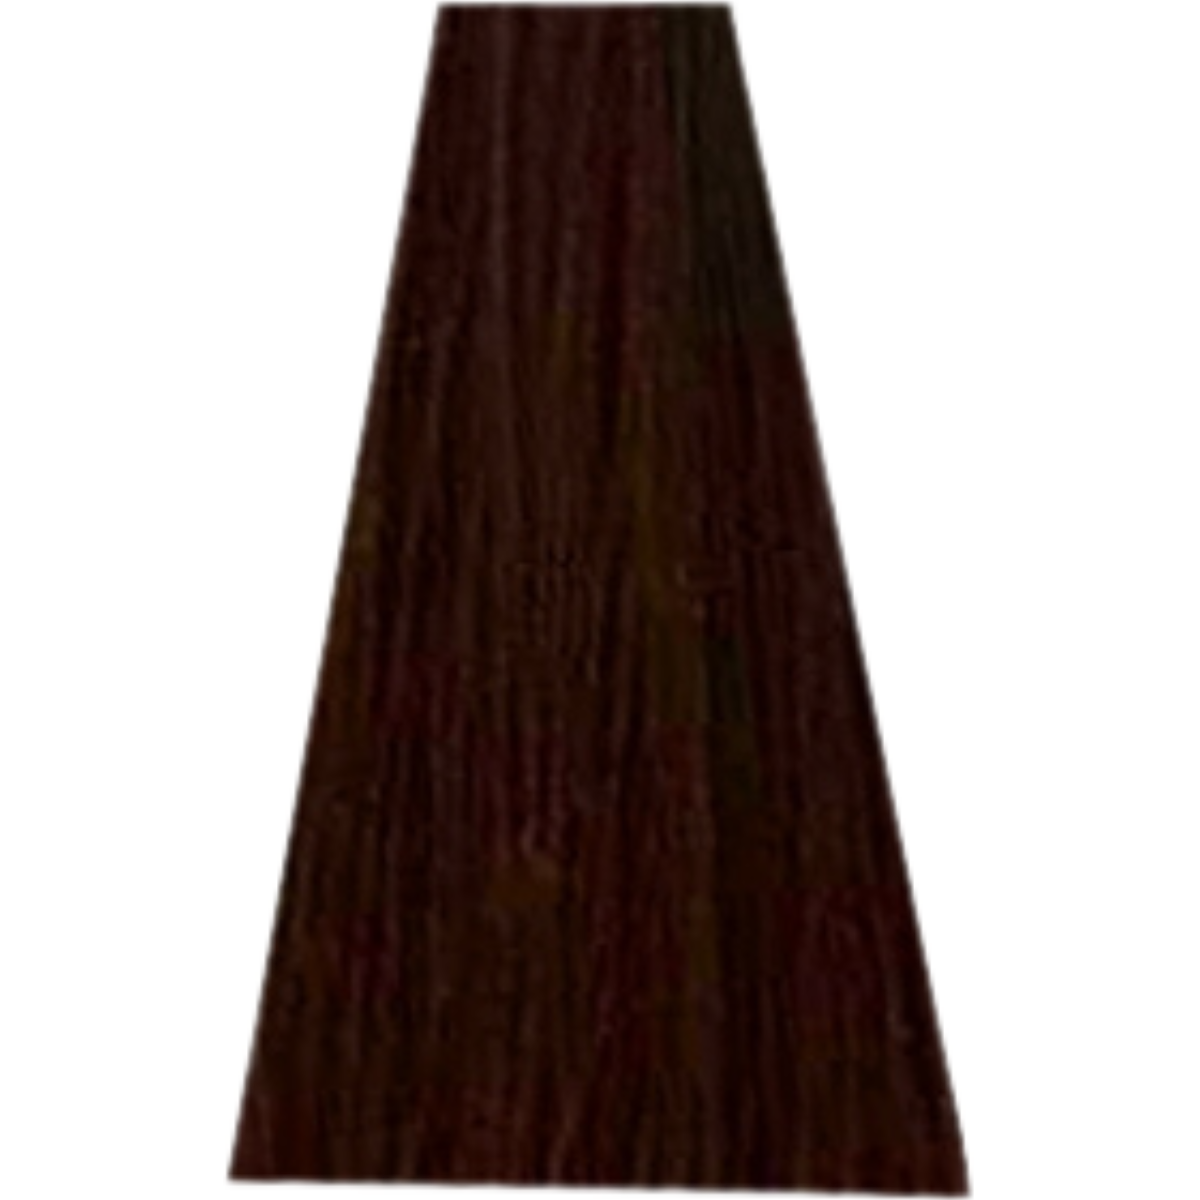 צבע שיער 6.28 PEARLY MOCHA DARK BLONDE דיה לייט לוריאל DIA LIGHT LOREAL צבע שטיפה לשיער 50 מ"ל